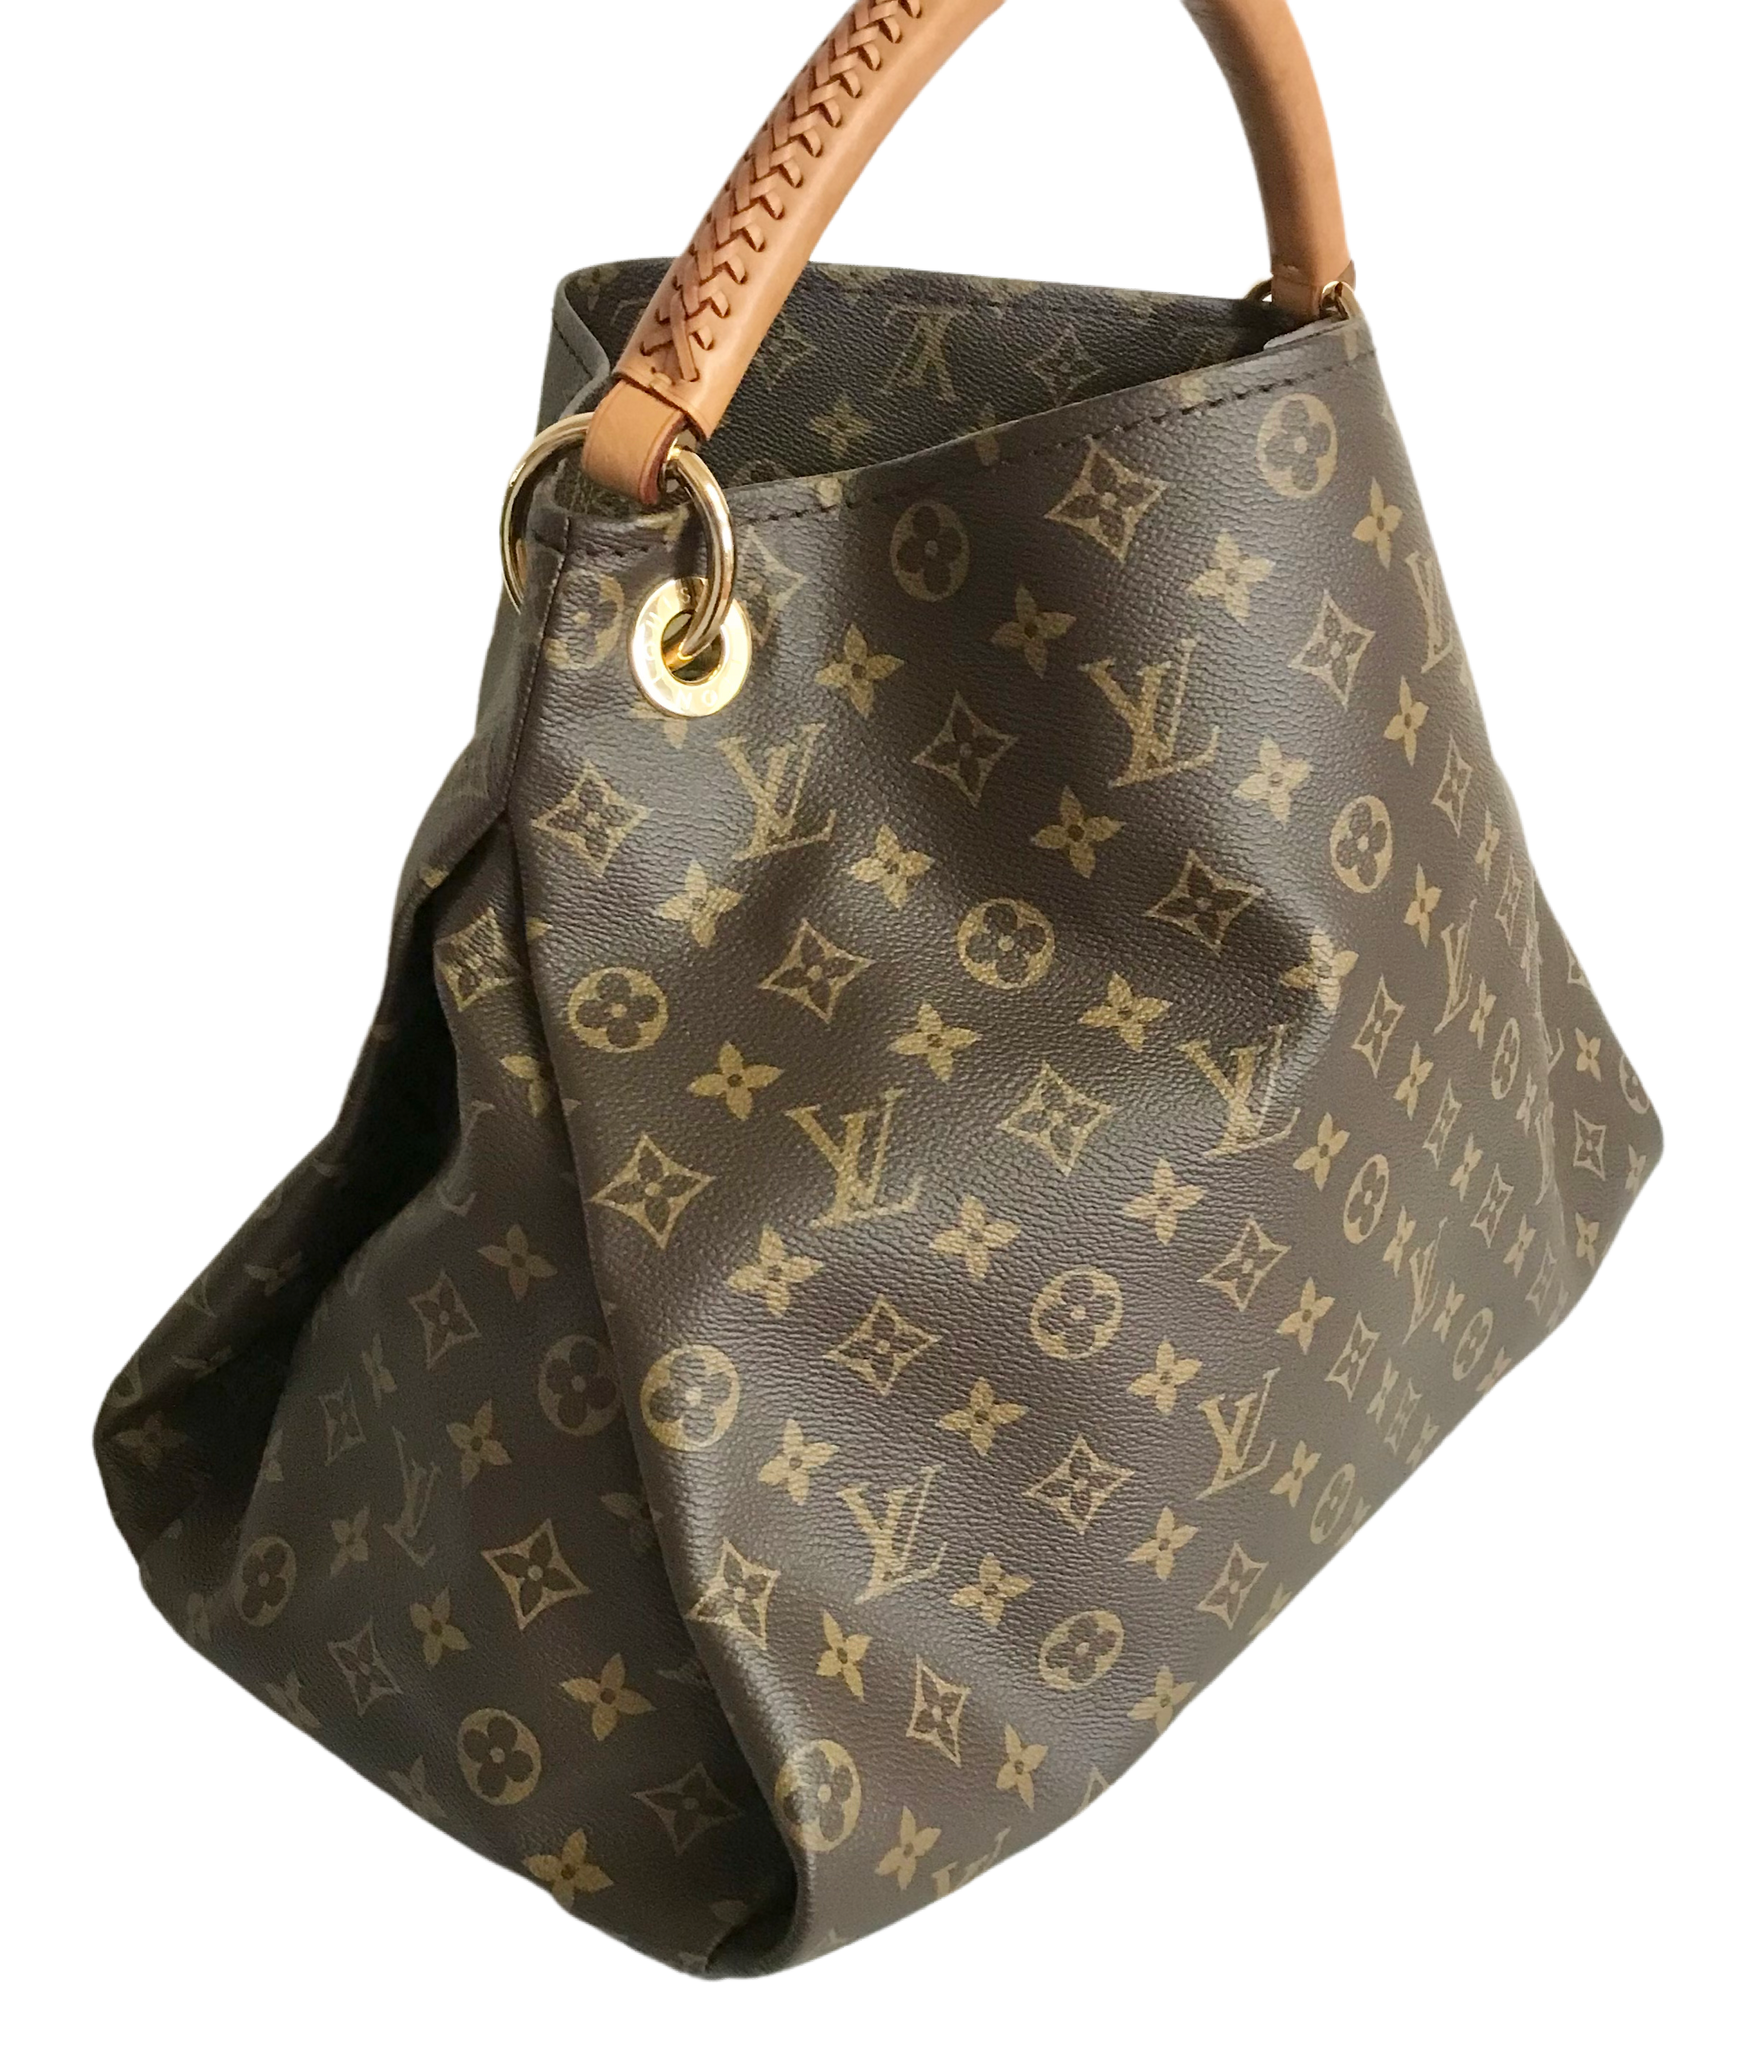 Louis Vuitton, Bags, Authentic Louis Vuitton Artsy Mm